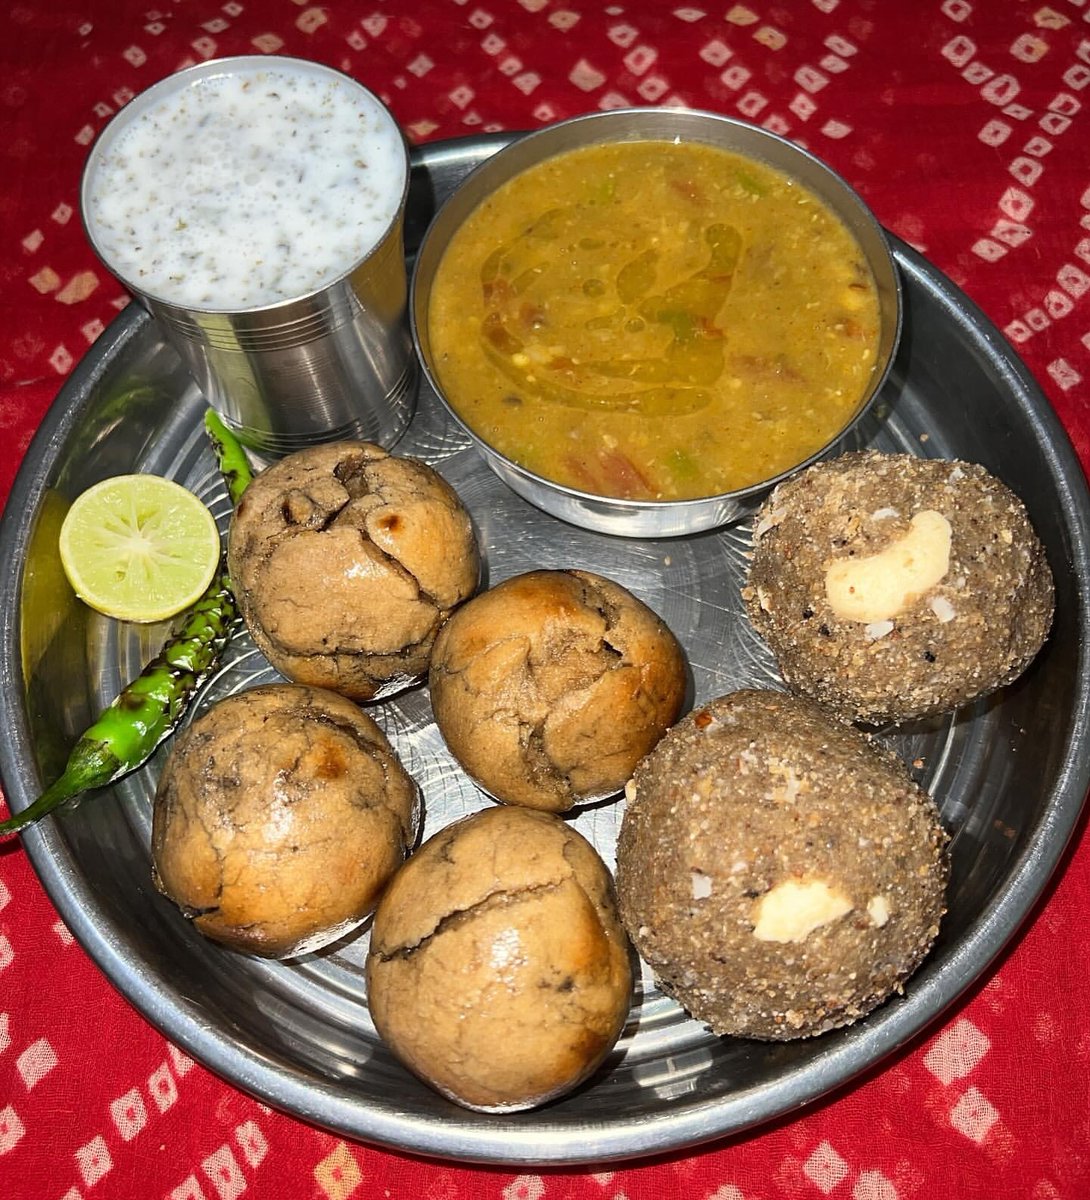 ल्यो राजस्थानी भोजन दाल बाटी चूरमा एकदम मस्त
मकरसंक्रांति के अवसर पर 😋